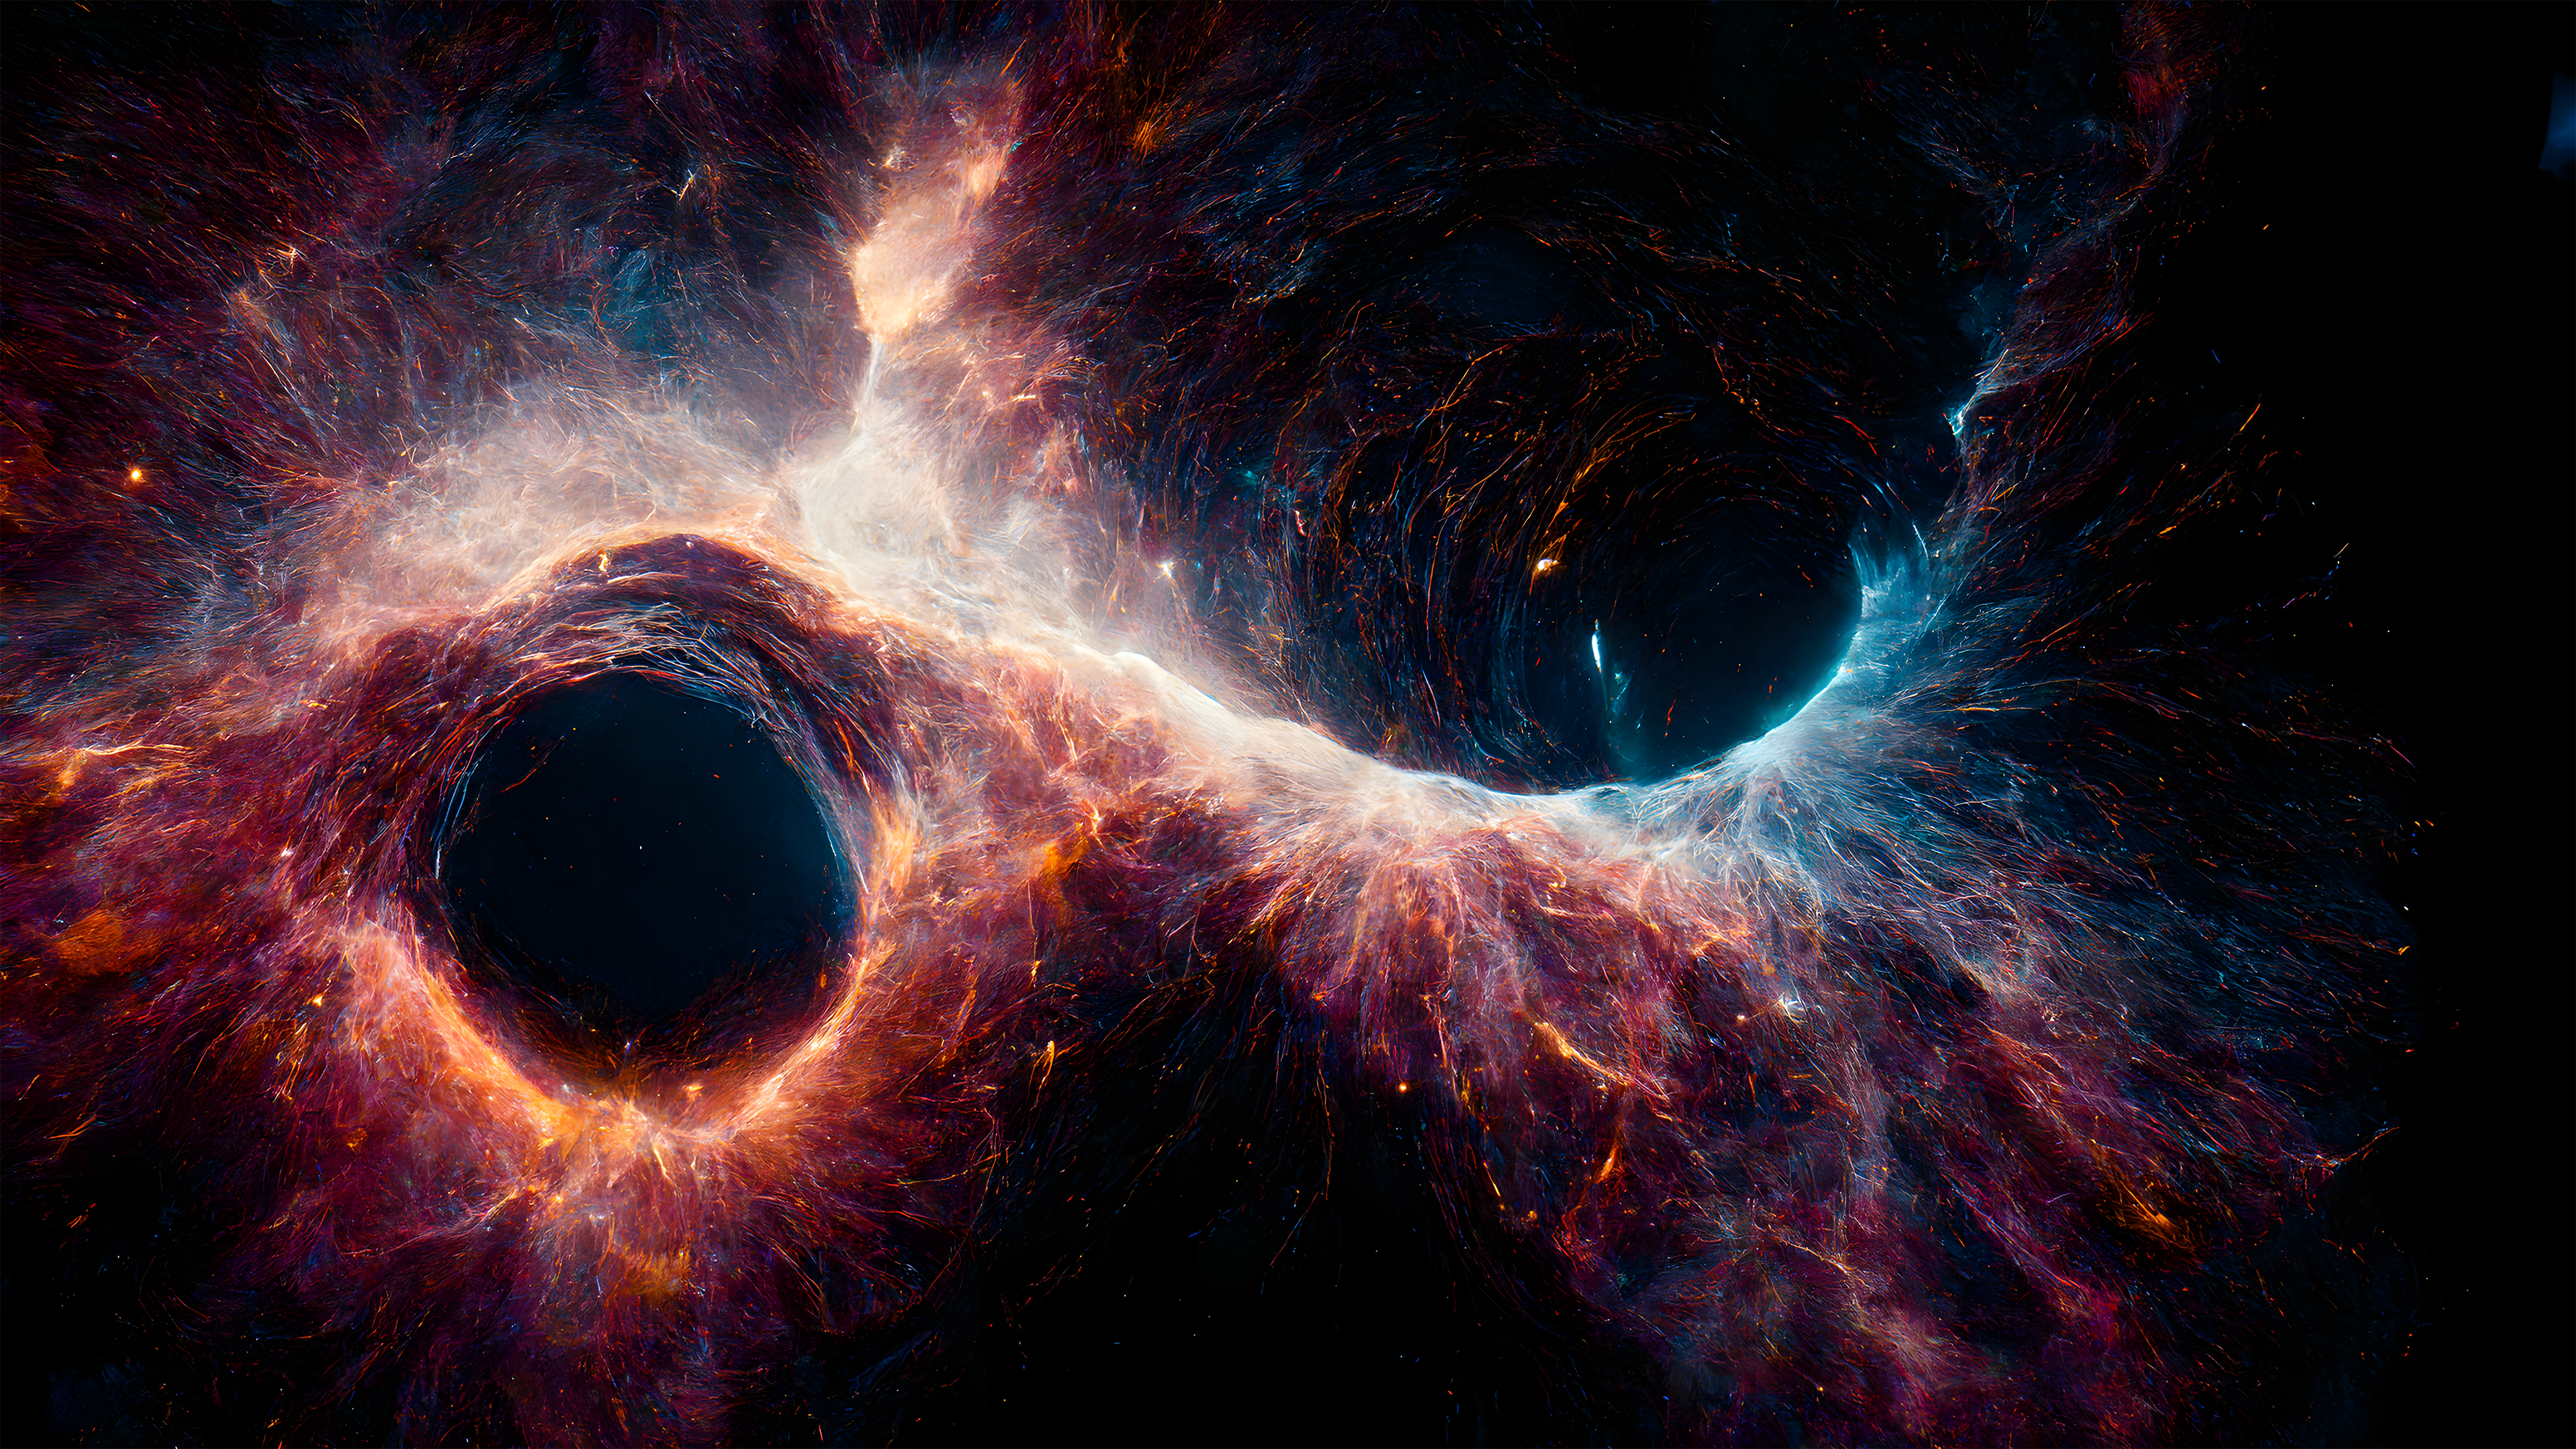 Lỗ đen siêu tỉ lệ: Với những bức ảnh lỗ đen siêu tỉ lệ, bạn sẽ đã bước vào một cuộc hành trình phiêu lưu đến không gian rộng lớn, nơi lỗ đen xô ngược, tạo ra những hiện tượng thiên nhiên huyền bí, và giúp ta hiểu rõ hơn về vũ trụ.